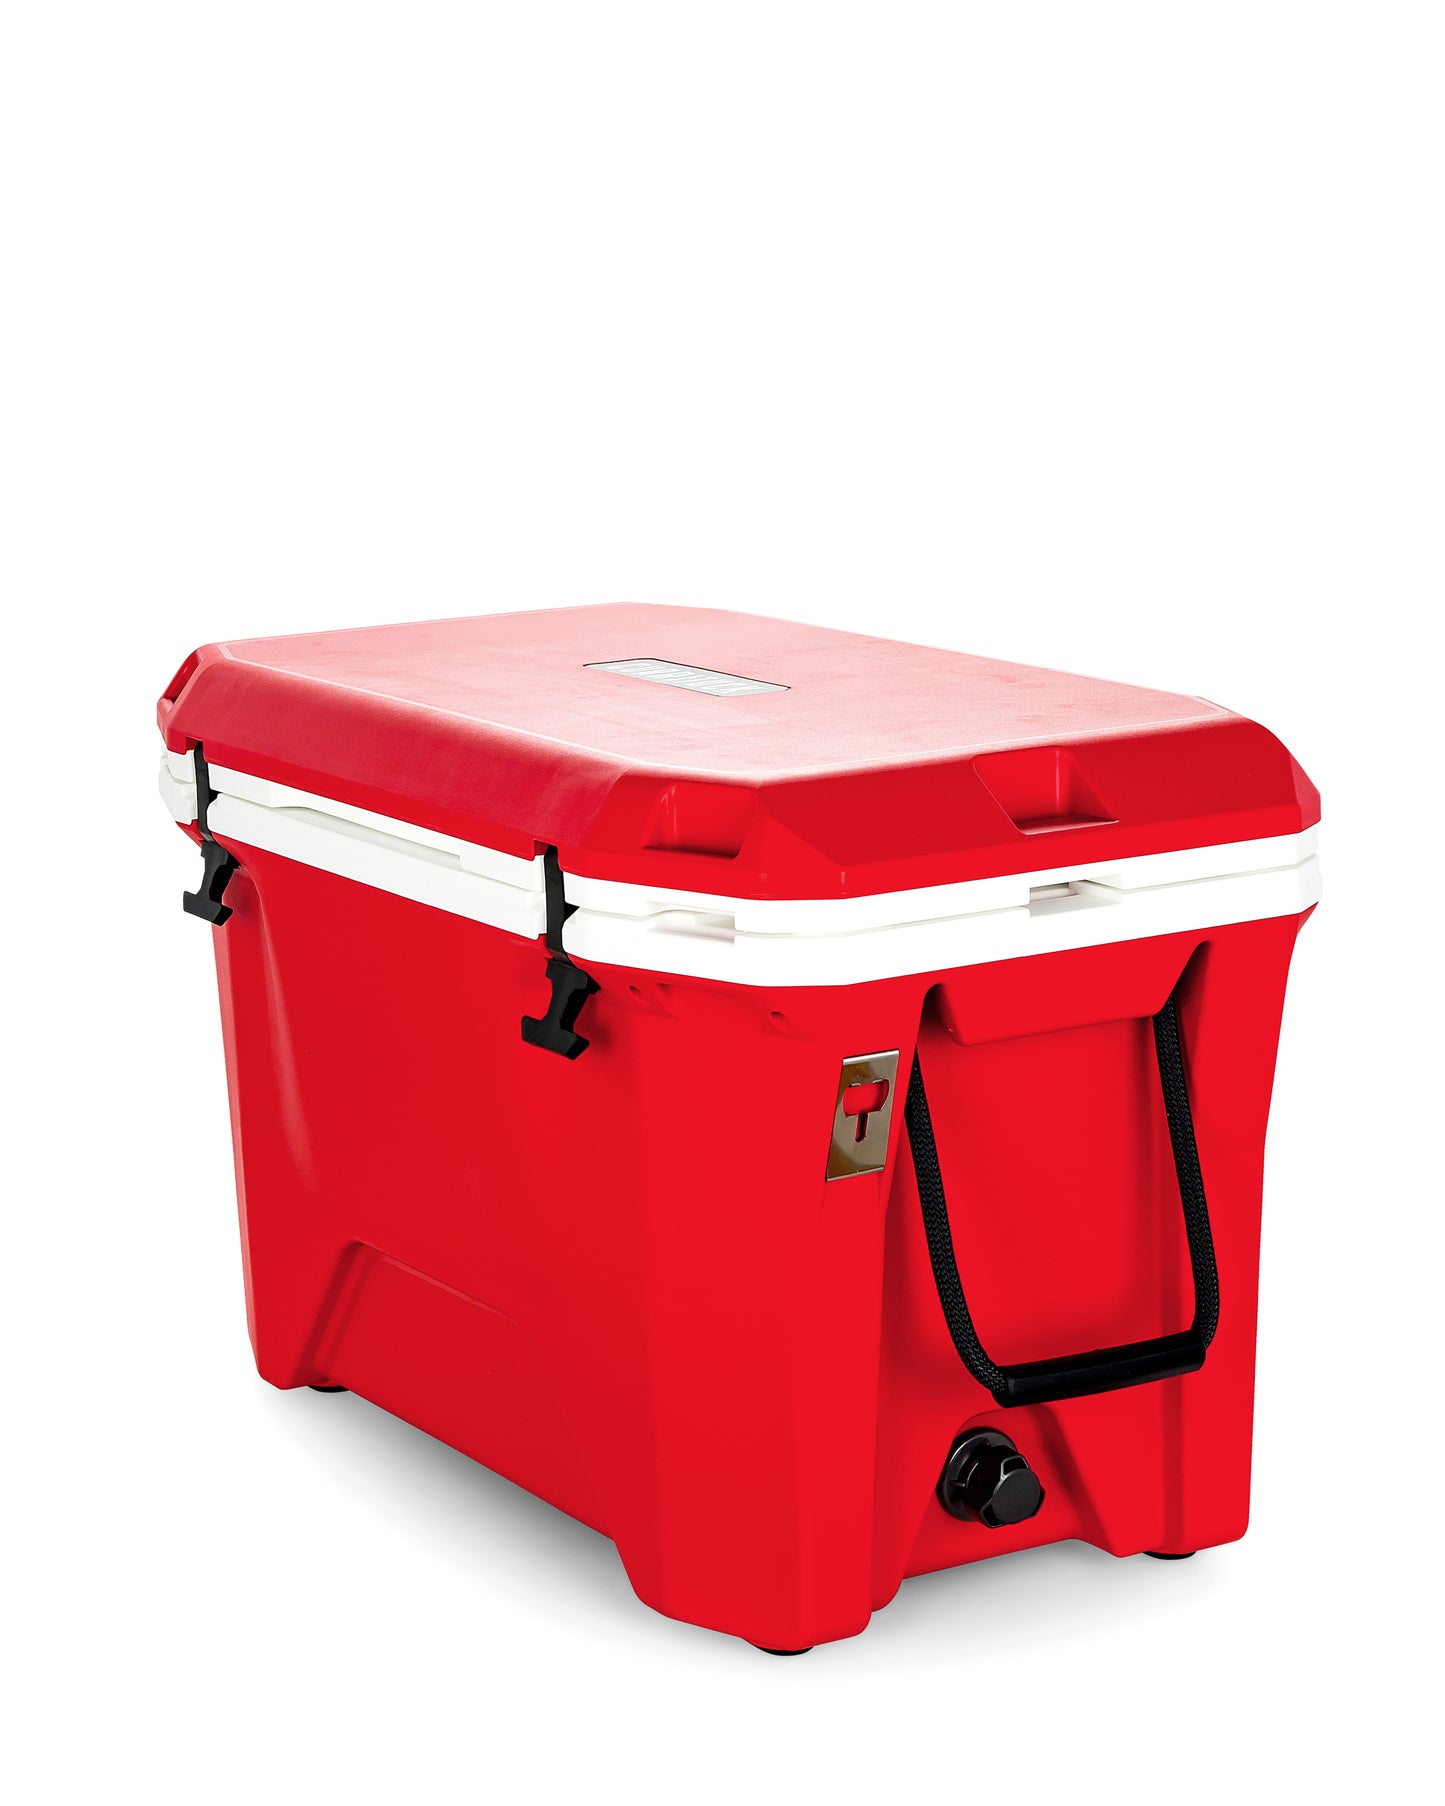 Currituck 30 and 50 Quart Premium Coolers - Bright Red & White